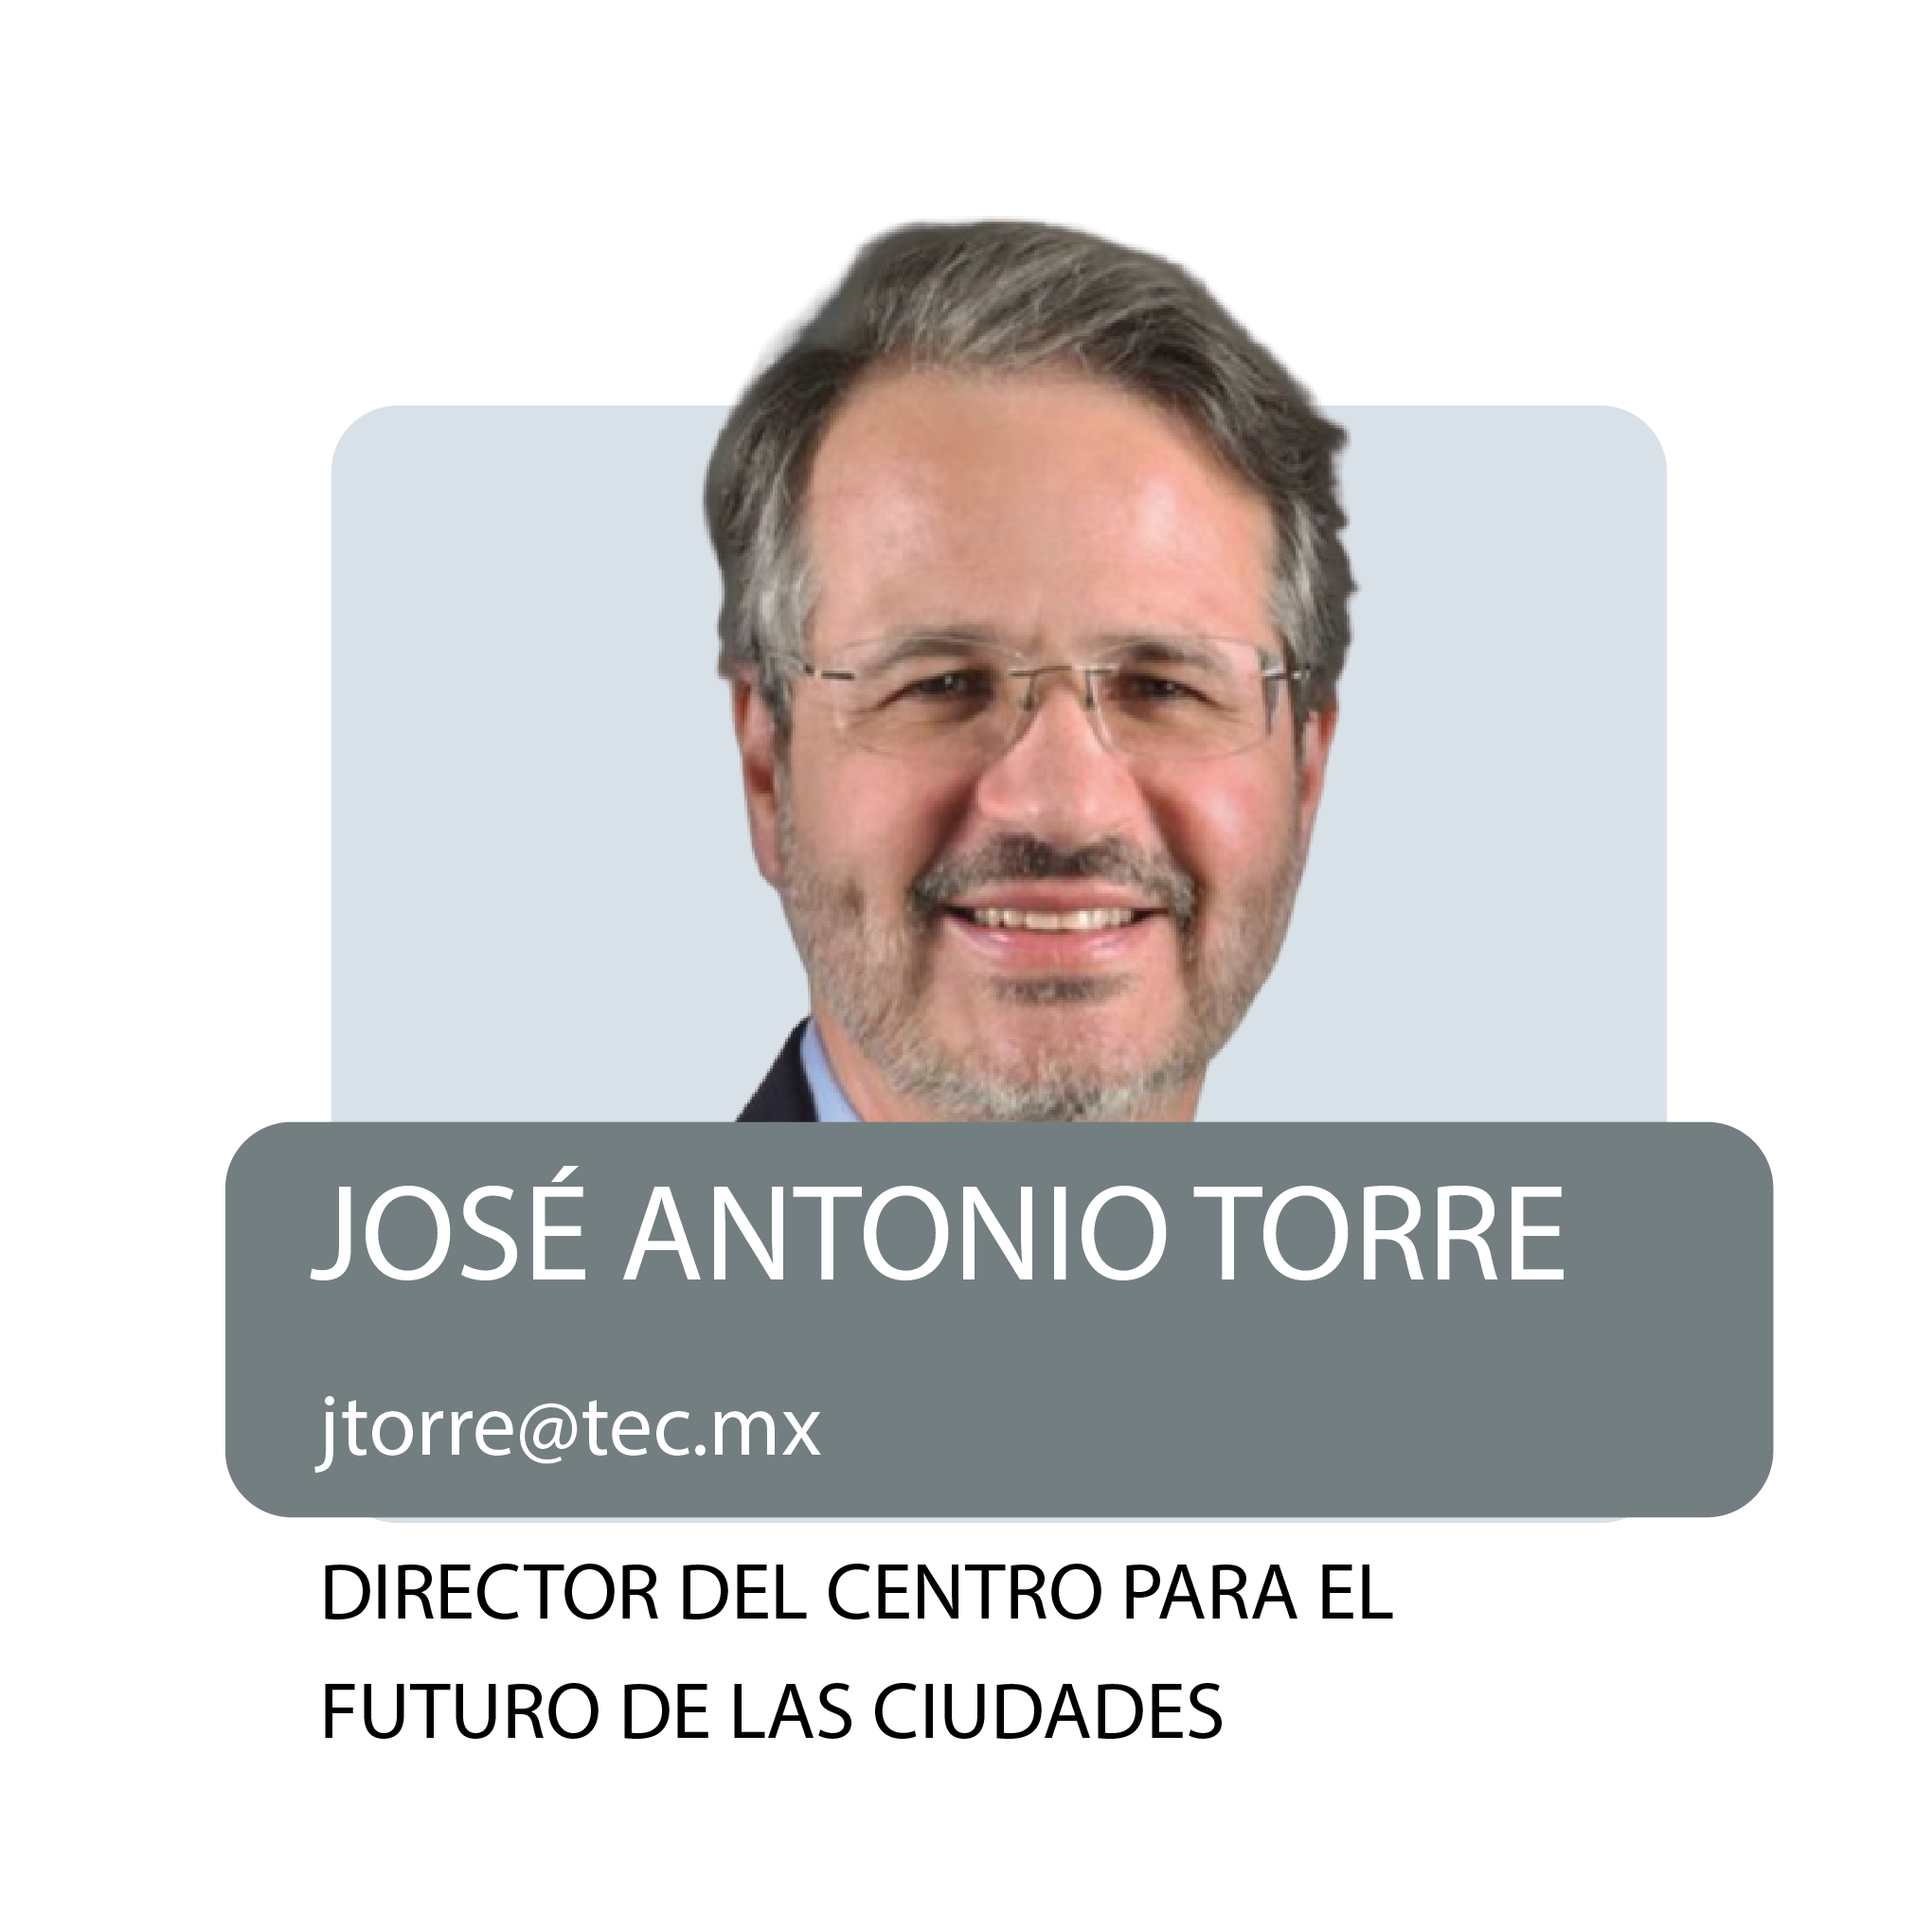 José Antonio Torre